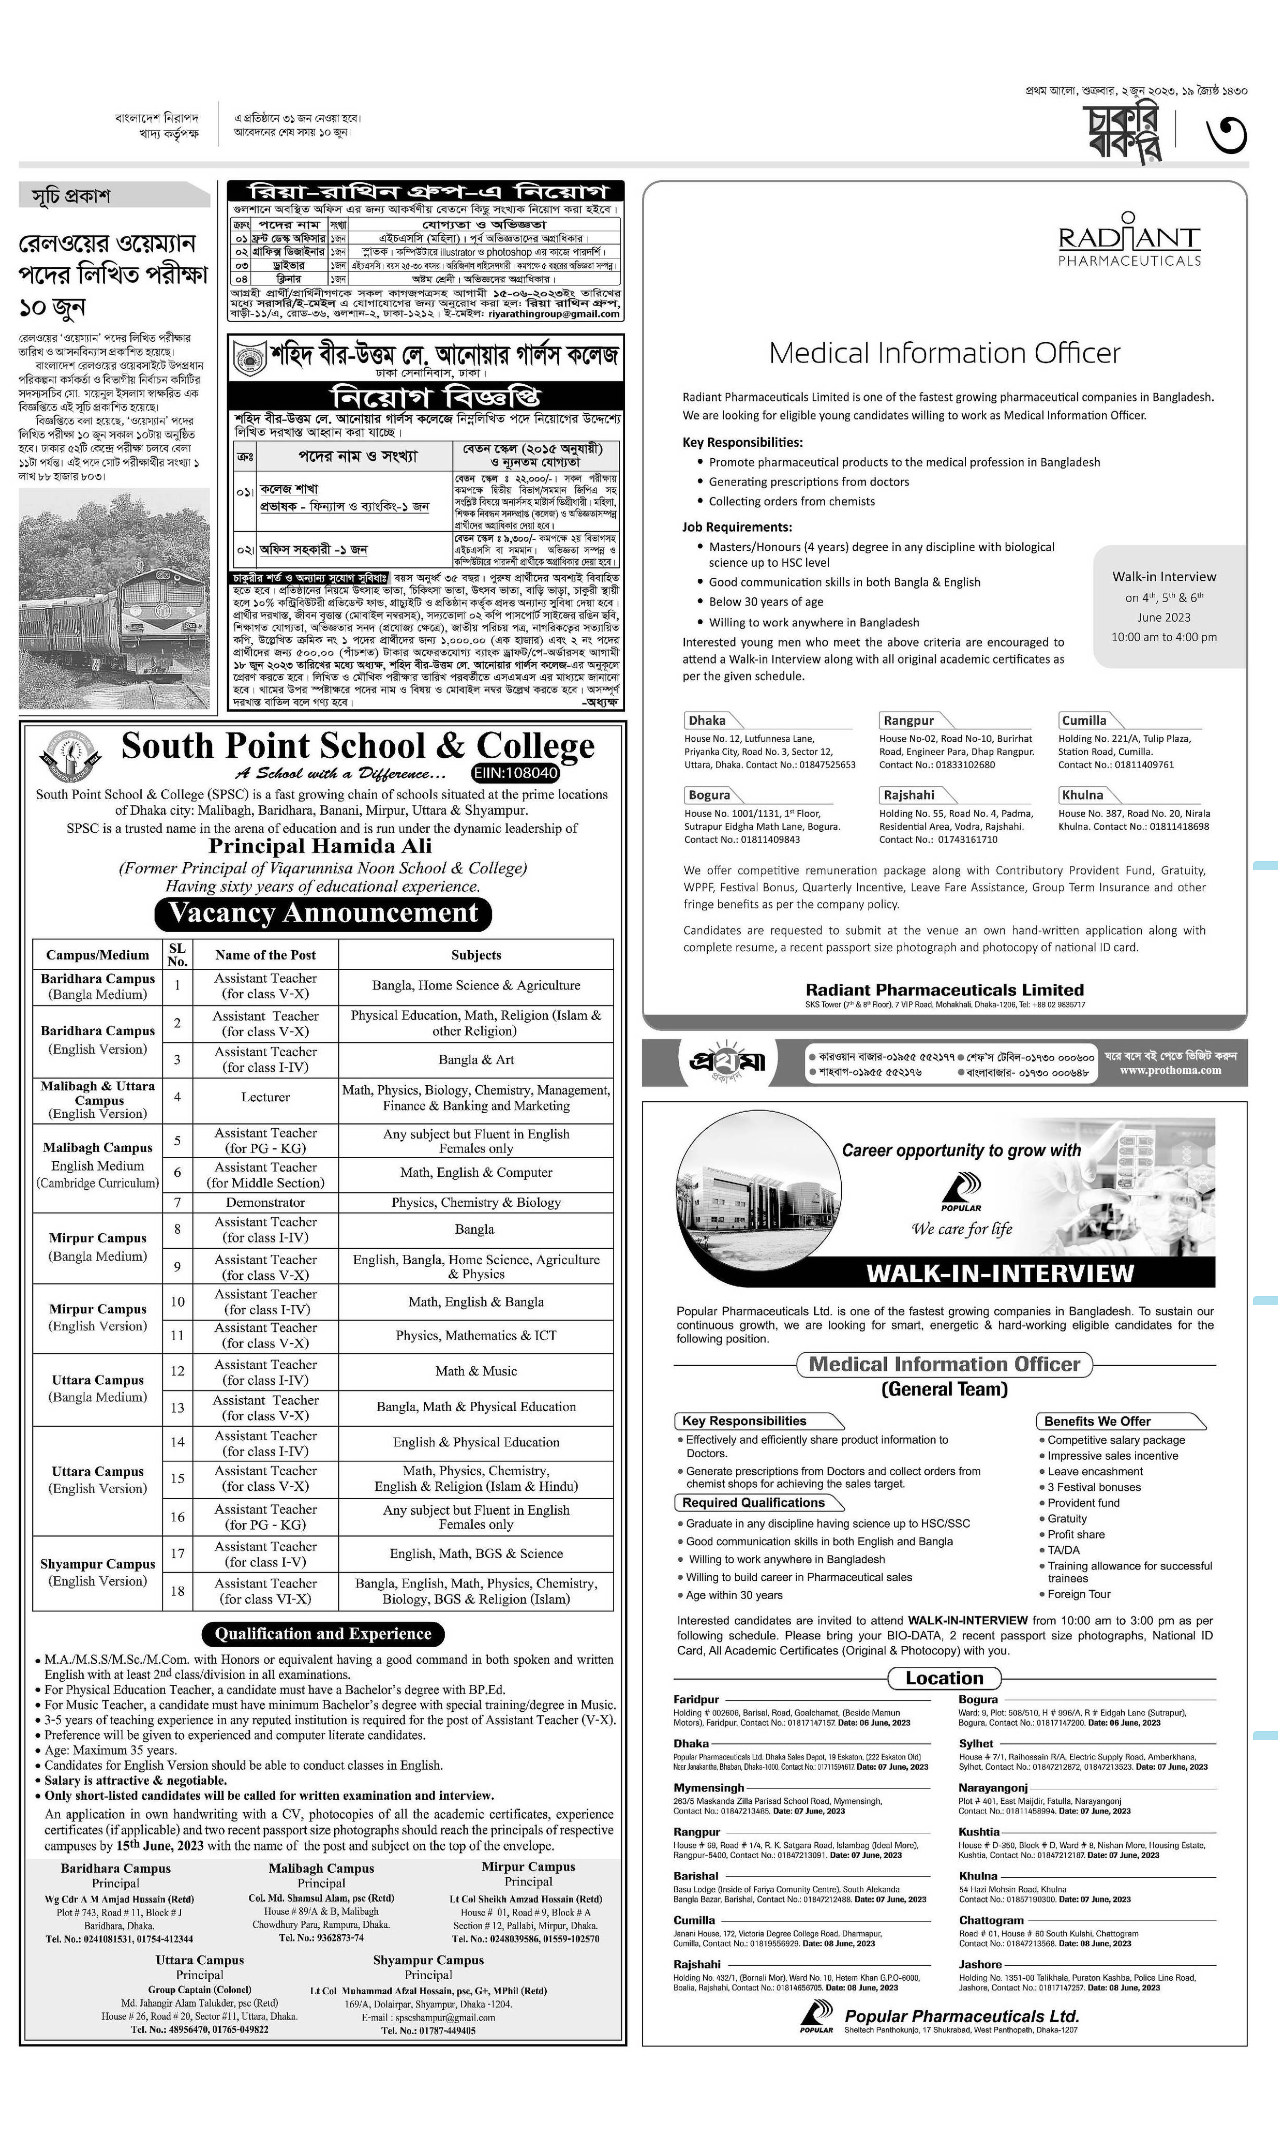 প্রথম আলো চাকরির খবর চাকরির বাকরি ০৯ জুন ২০২৩ - Prothom Alo Chakrir Khobor Chakri Bakri 09 June 2023 - প্রথম আলো চাকরির খবর ০৯ জুন ২০২৩ - প্রথম আলো চাকরি বাকরি ০৯ জুন ২০২৩ - Prothom Alo Job Circular 09 June 2023 - Prothom Alo Chakri Bakri 09 Jun 2023 - প্রথম আলো পত্রিকা আজকের খবর ২০২৩ - prothom alo job circular 2023